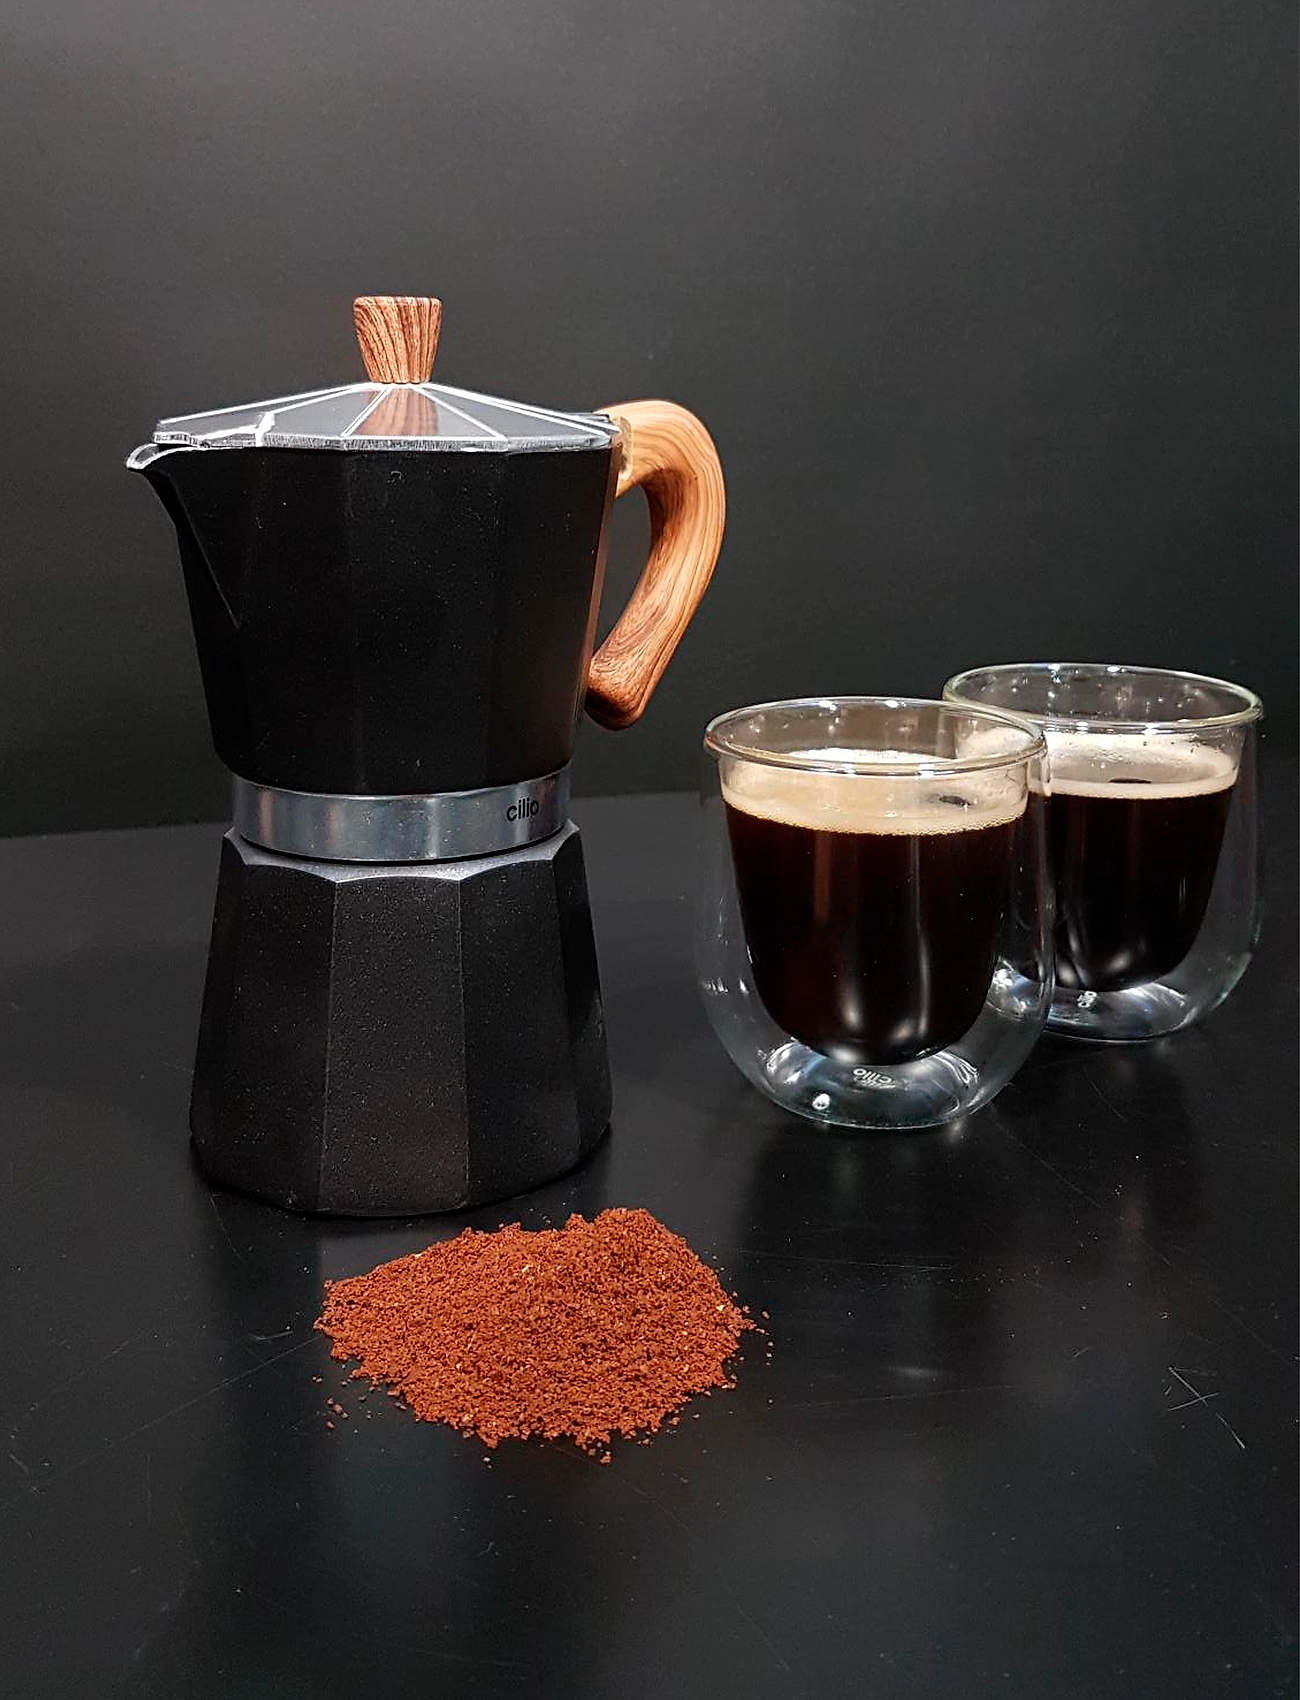 cilio - Espresso maker CLASSICO NATURA 3 cups - mokabryggare - black - 1